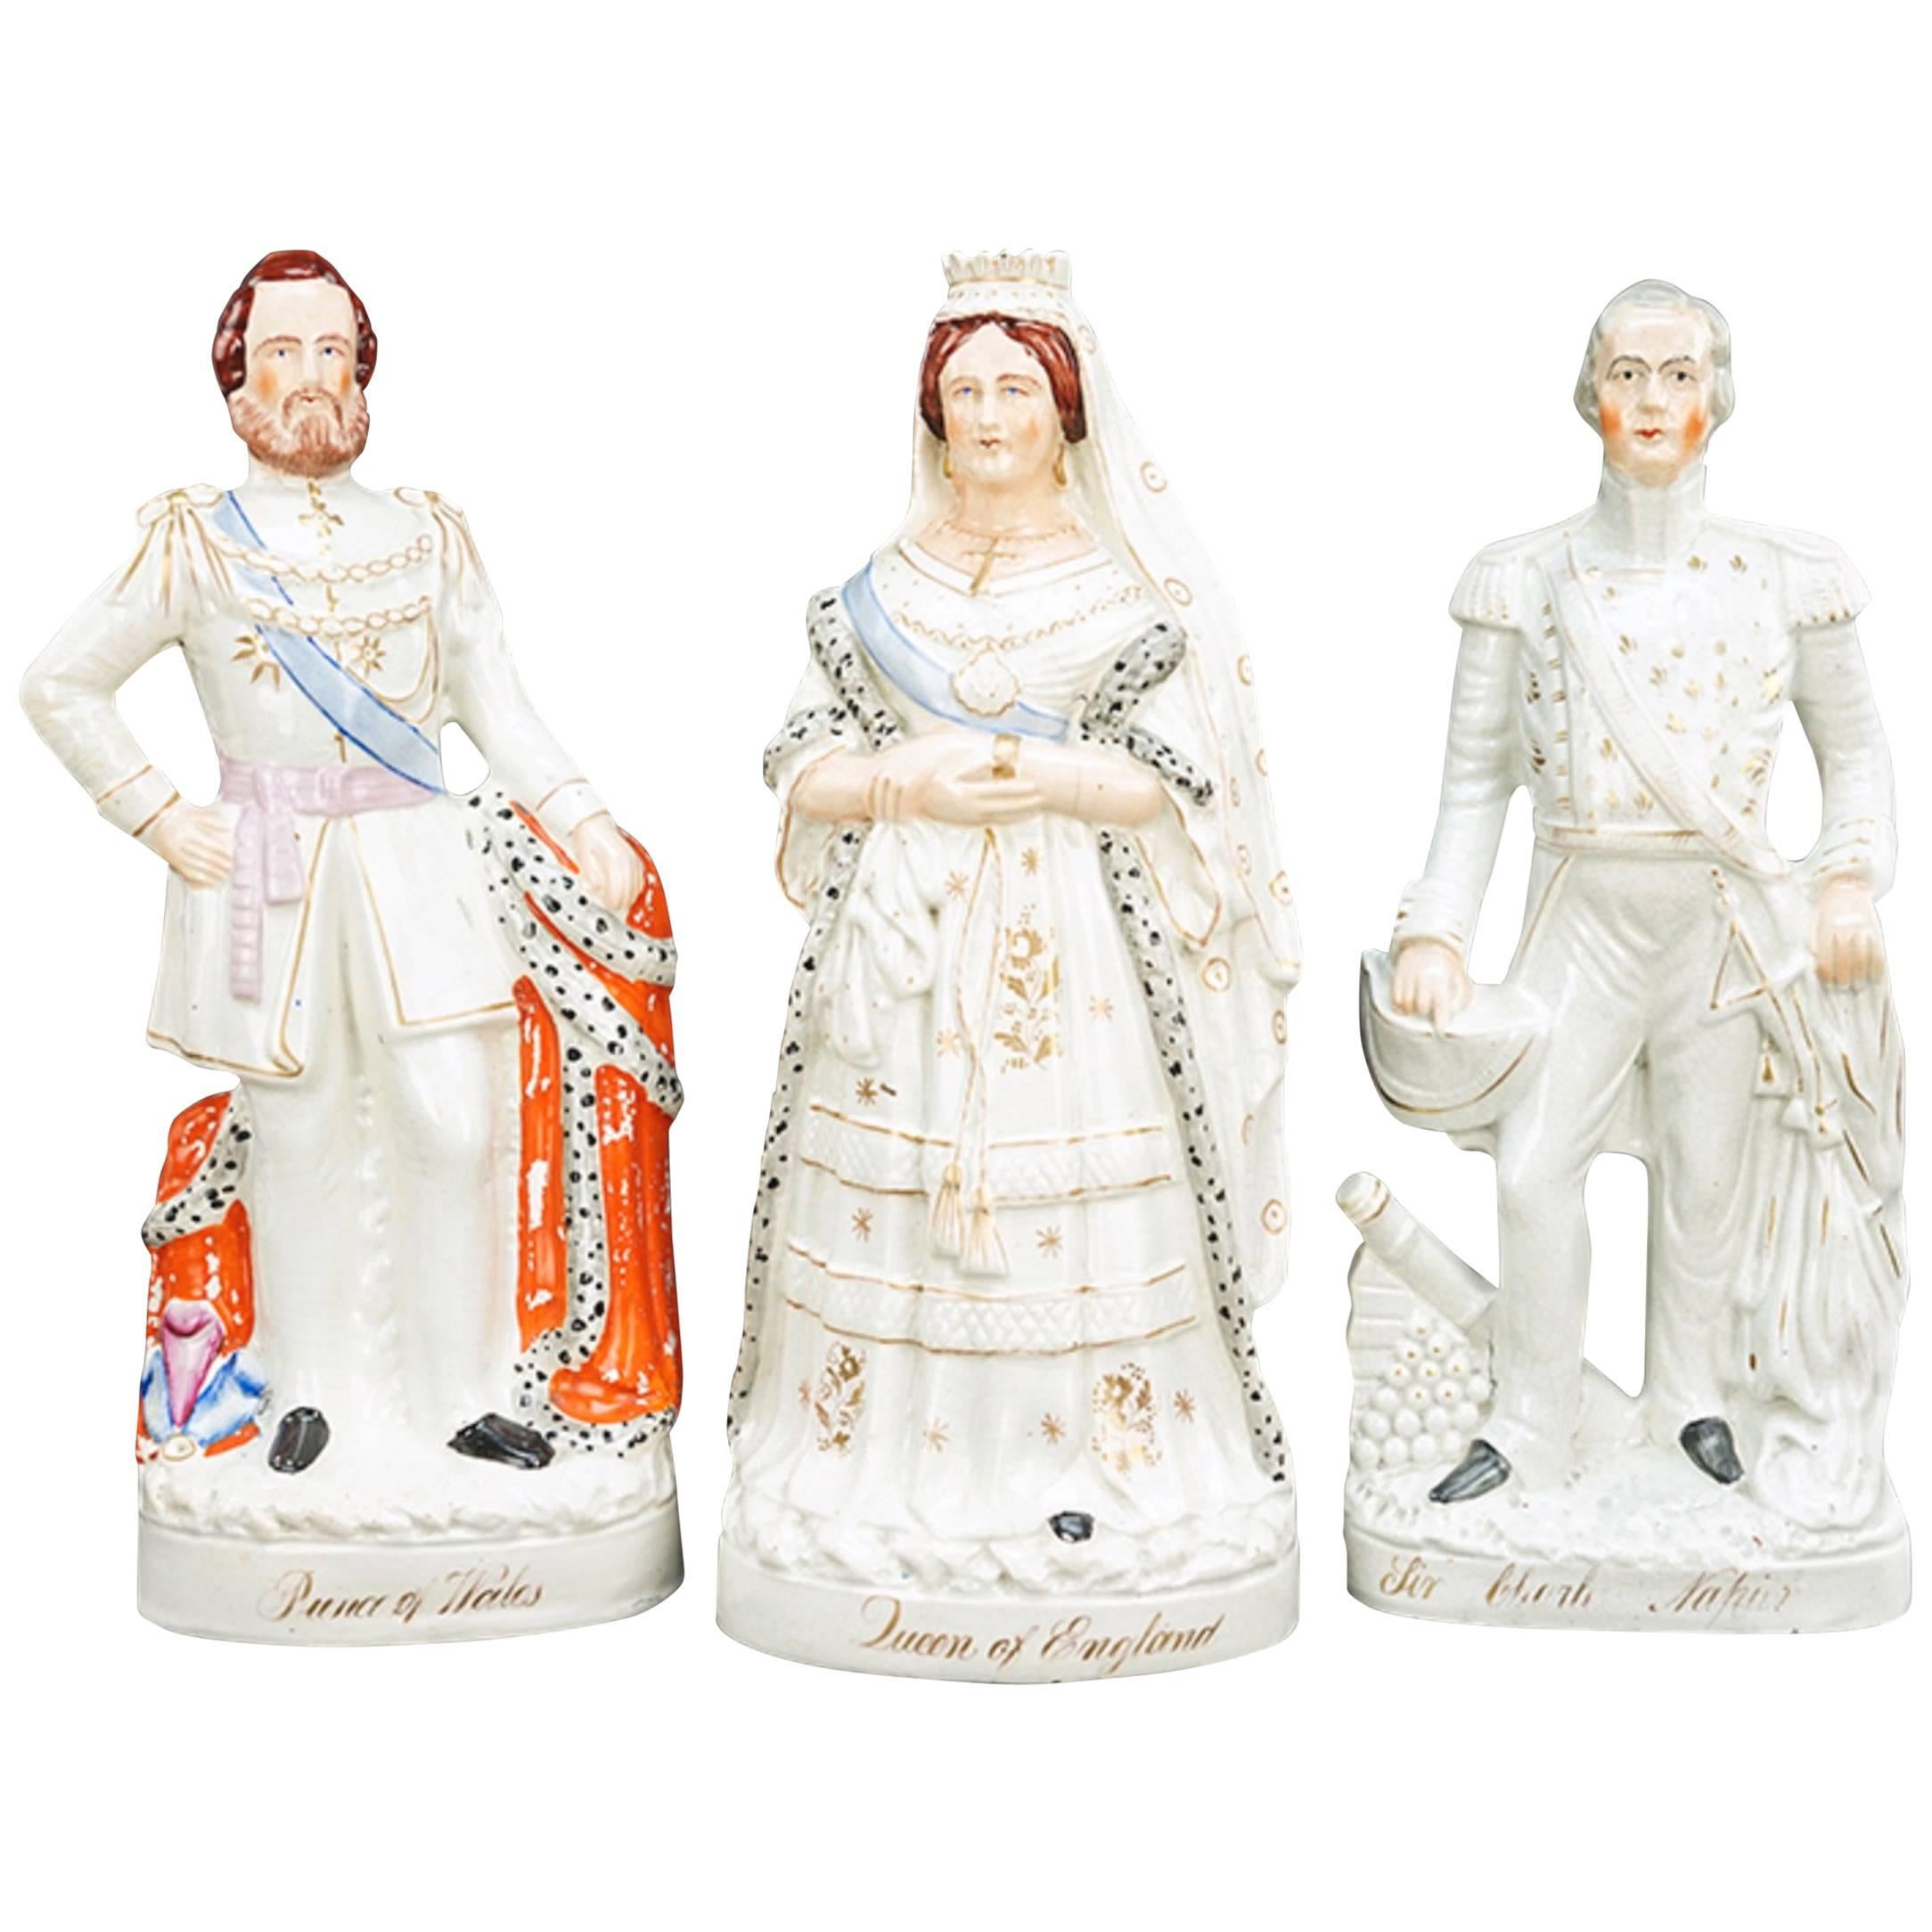 Sammlung von 7 königlichen Figuren aus Staffordshire-Keramik des 19. Jahrhunderts, großformatig